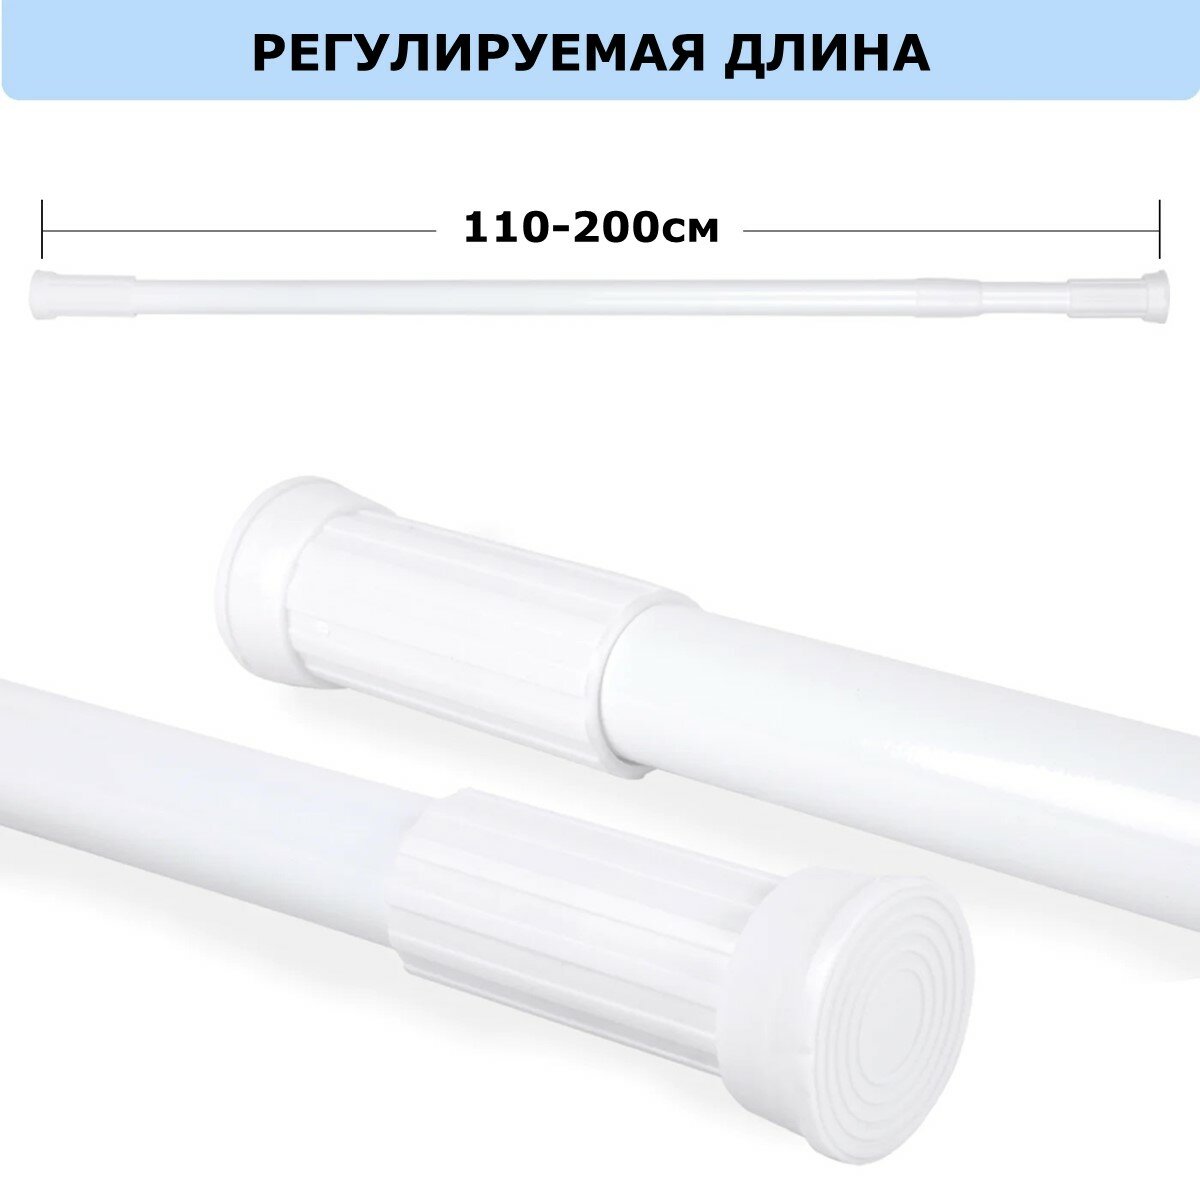 Карниз для ванной телескопический раздвижной белый Ridberg 110-200 см / Штанга для душа распорная